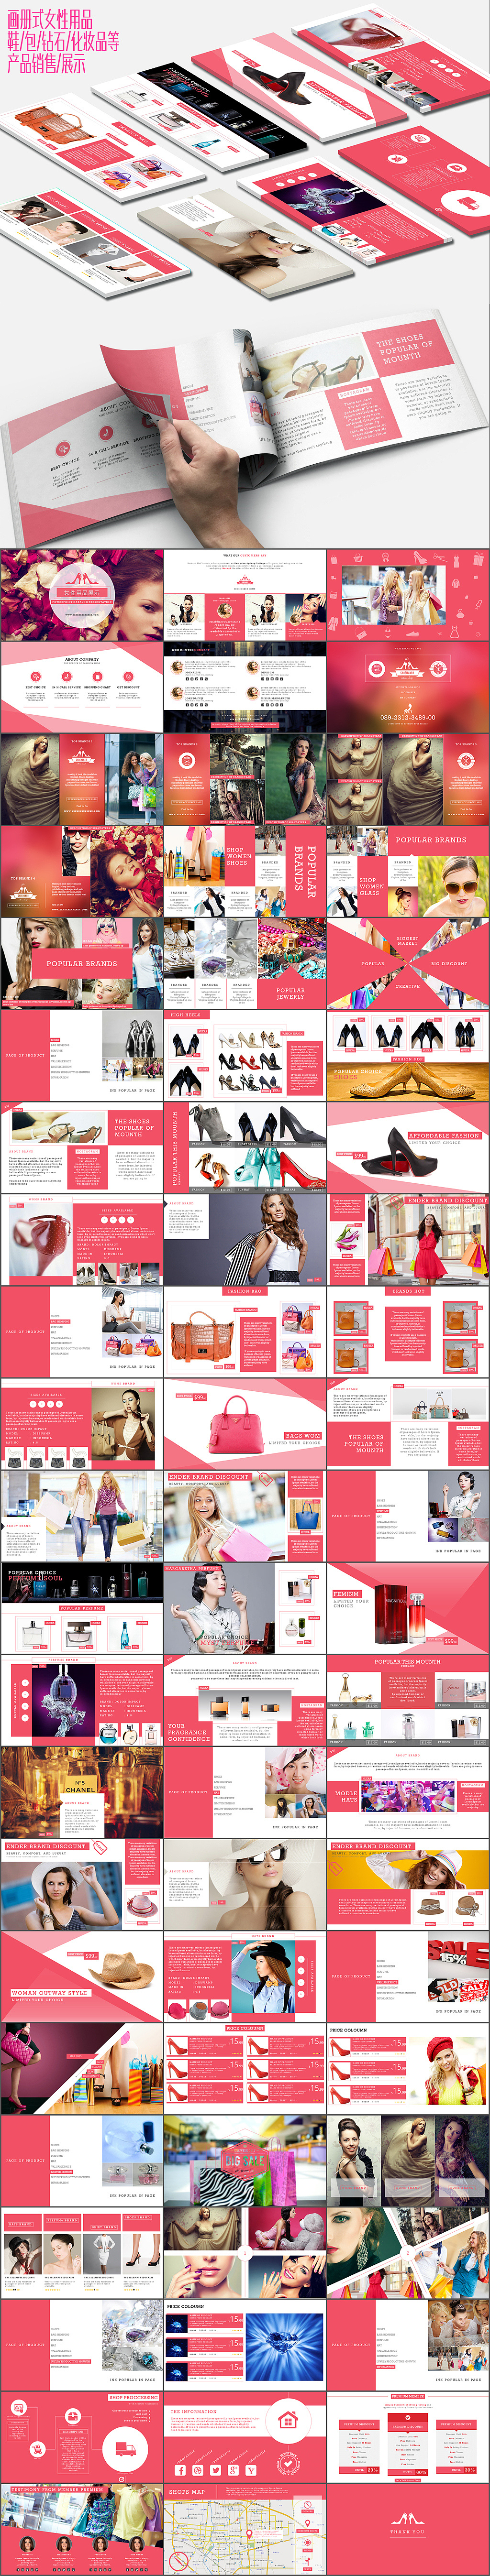 女性鞋包帽钻石化妆品产品销售画册式展示动态PPT模板